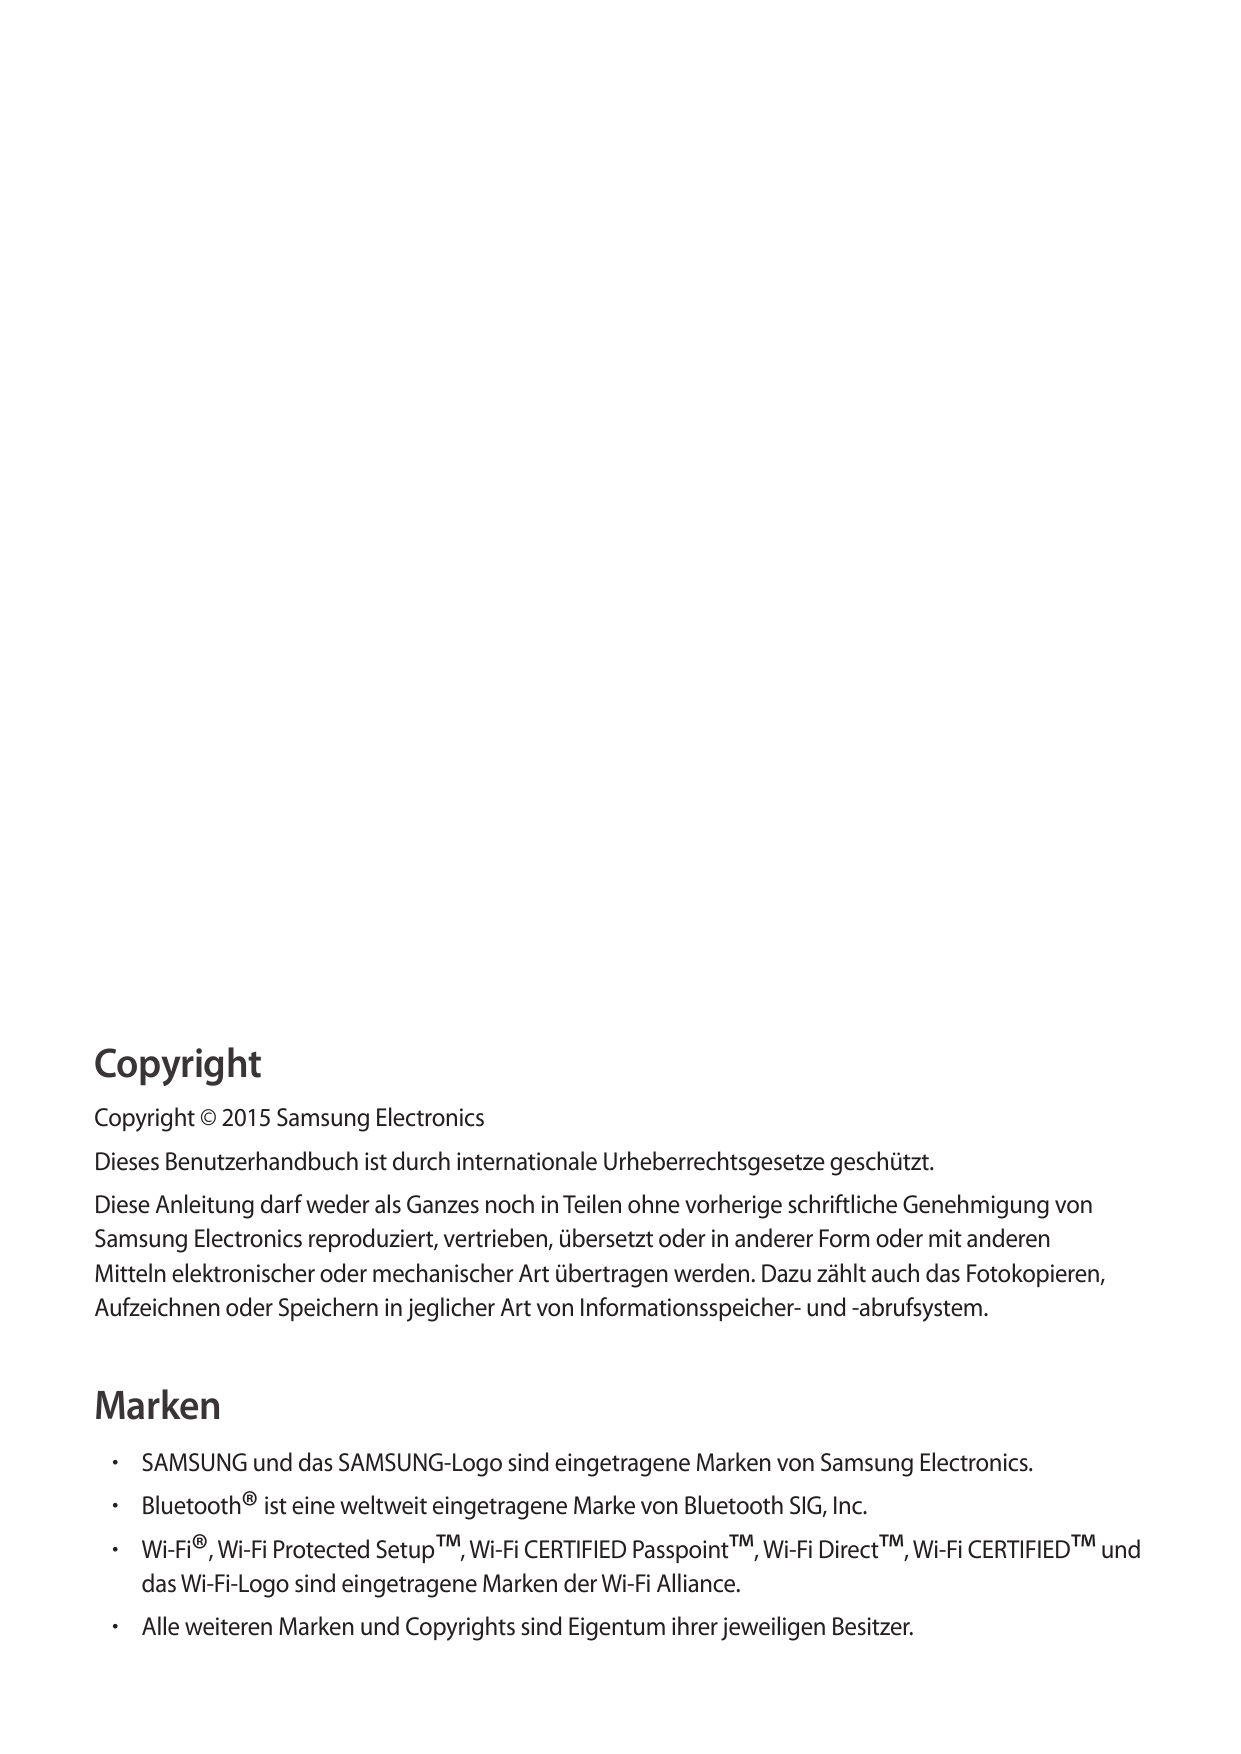 CopyrightCopyright © 2015 Samsung ElectronicsDieses Benutzerhandbuch ist durch internationale Urheberrechtsgesetze geschützt.Die